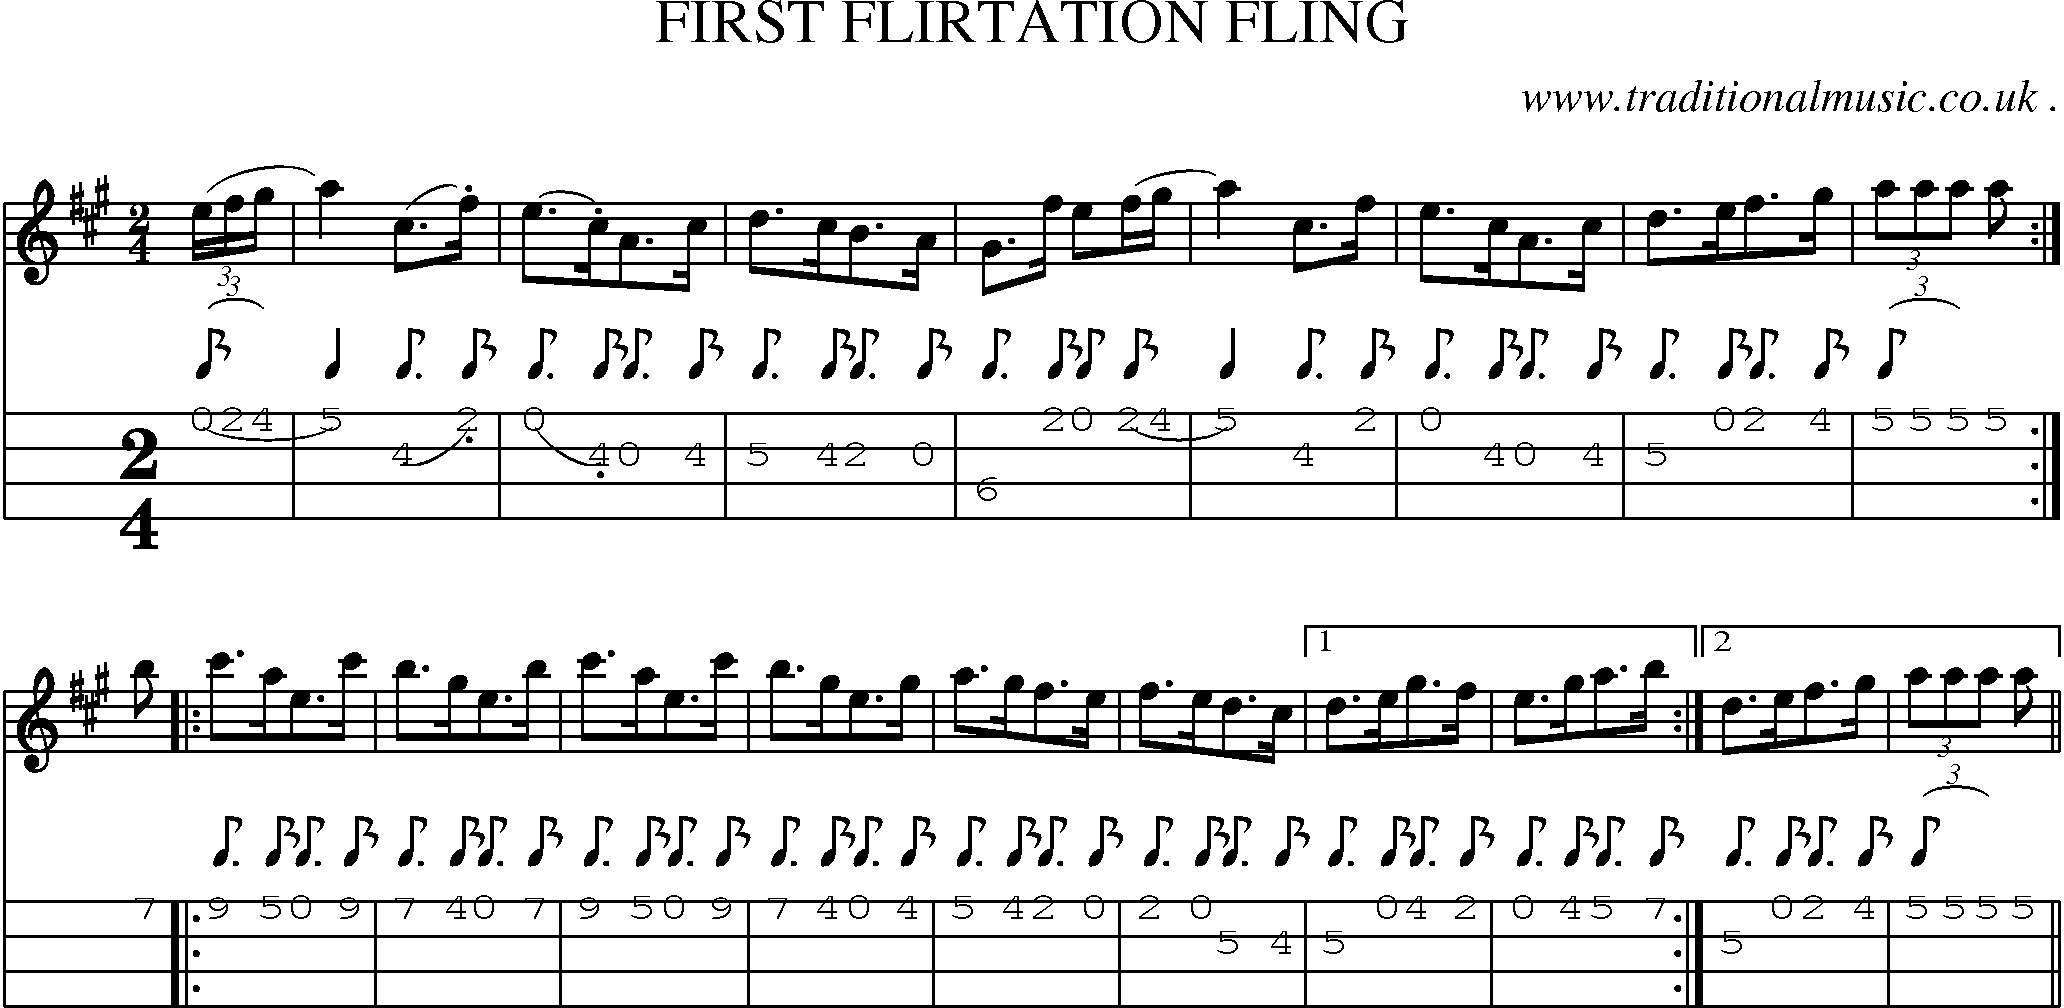 Sheet-Music and Mandolin Tabs for First Flirtation Fling